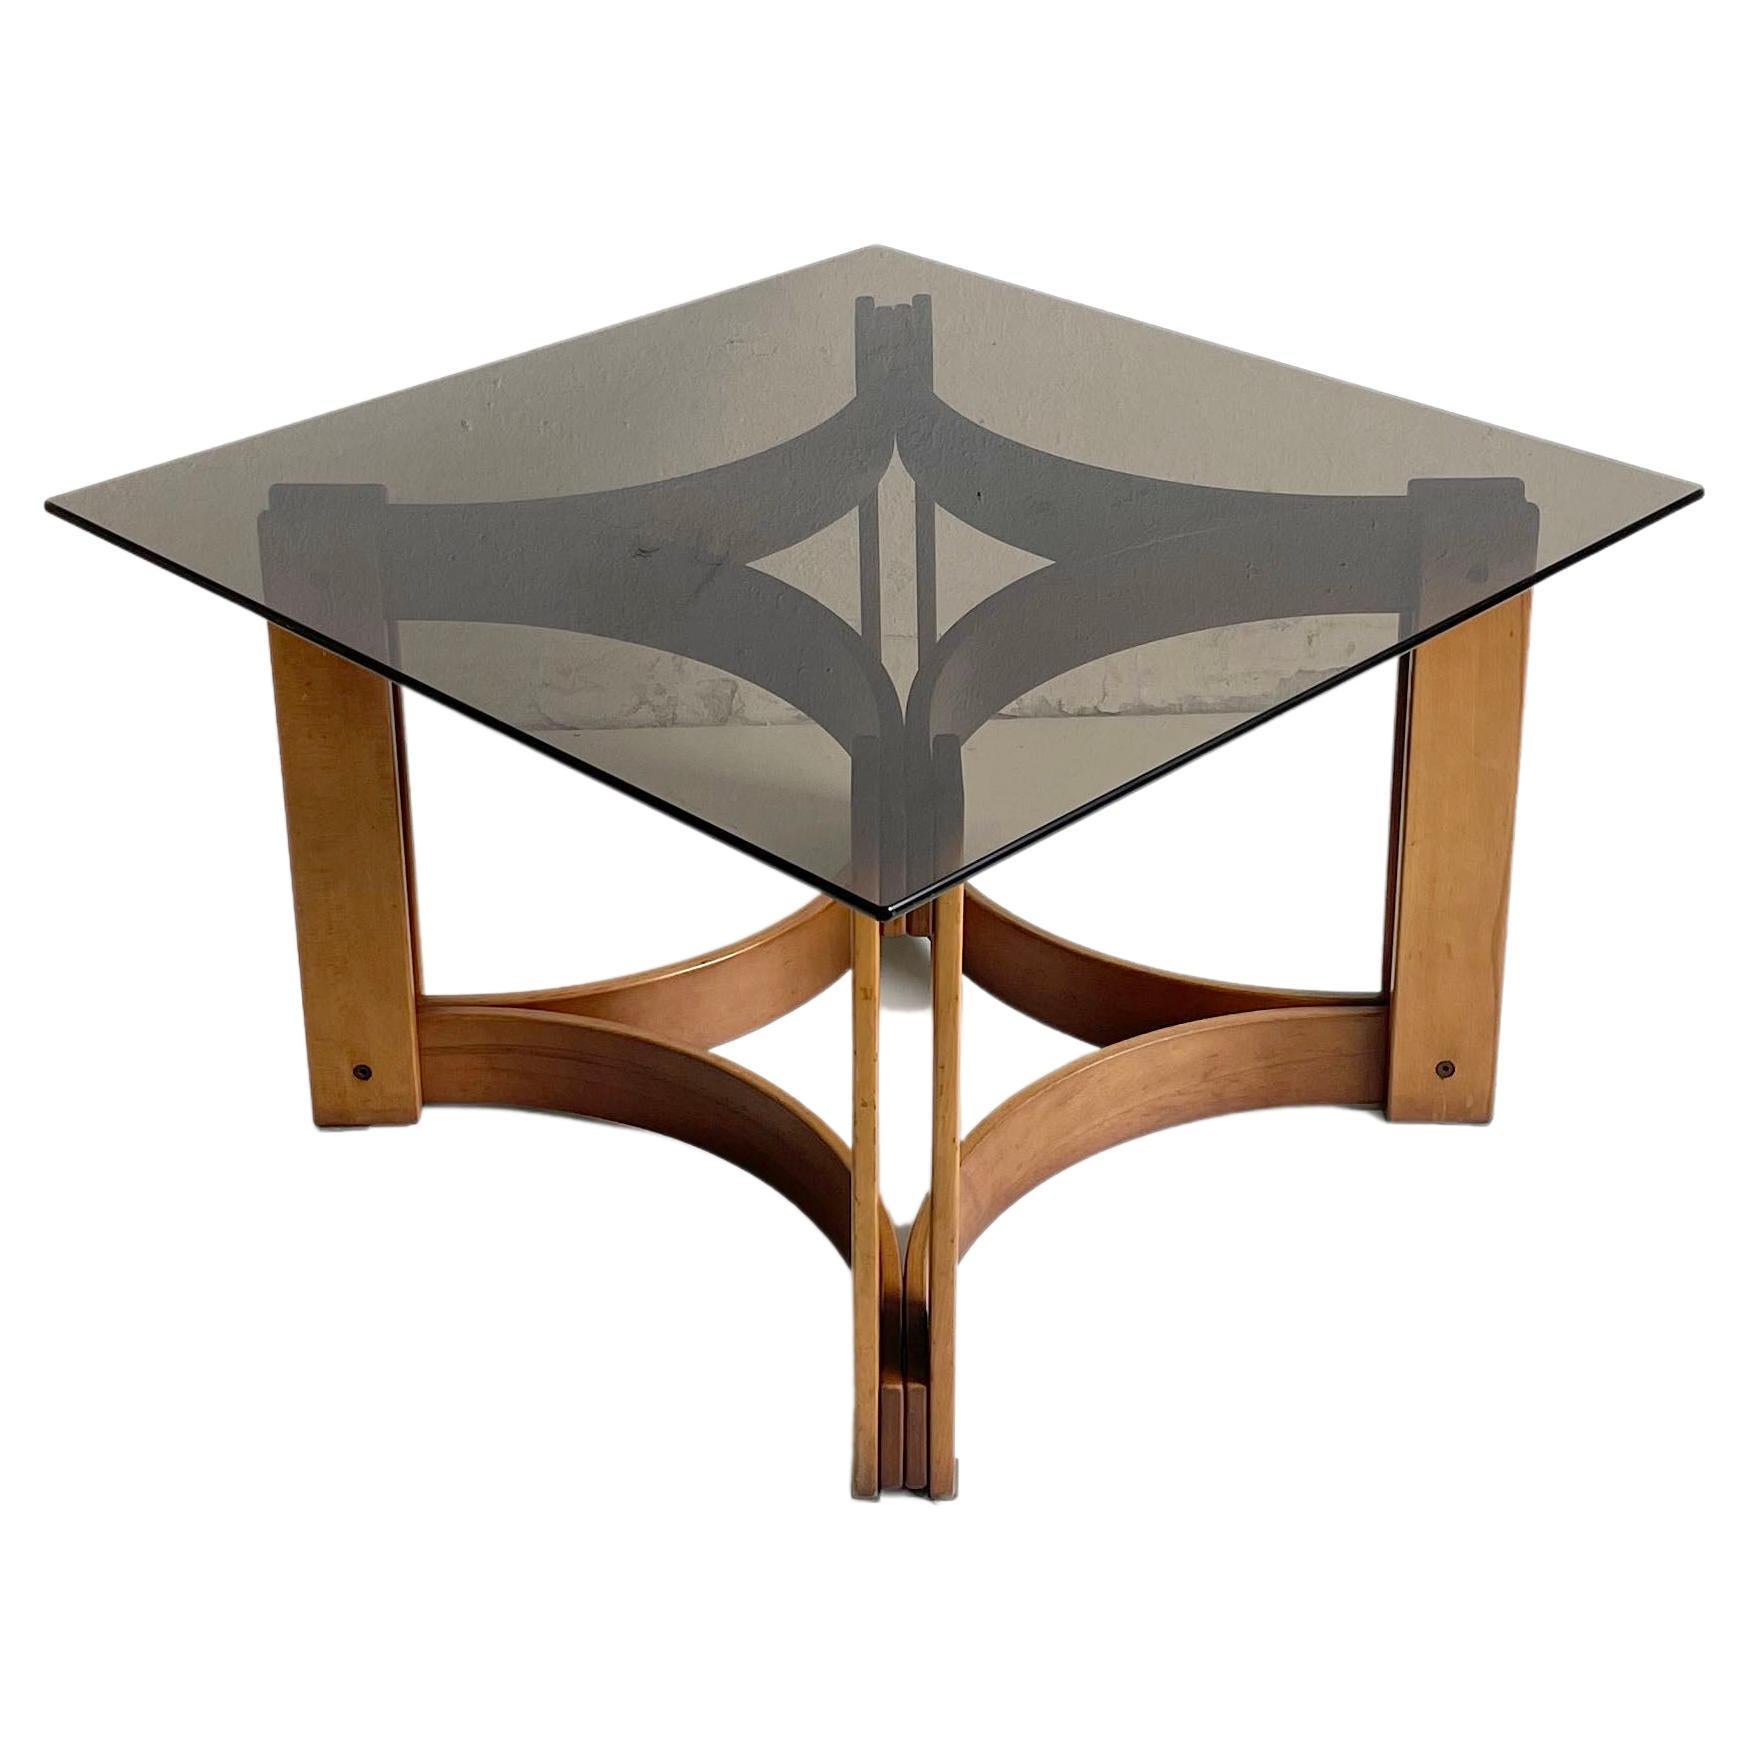 Scandinavian Modern Sculptural Design Coffee Table, Bentwood Smoked Glass, 1970s